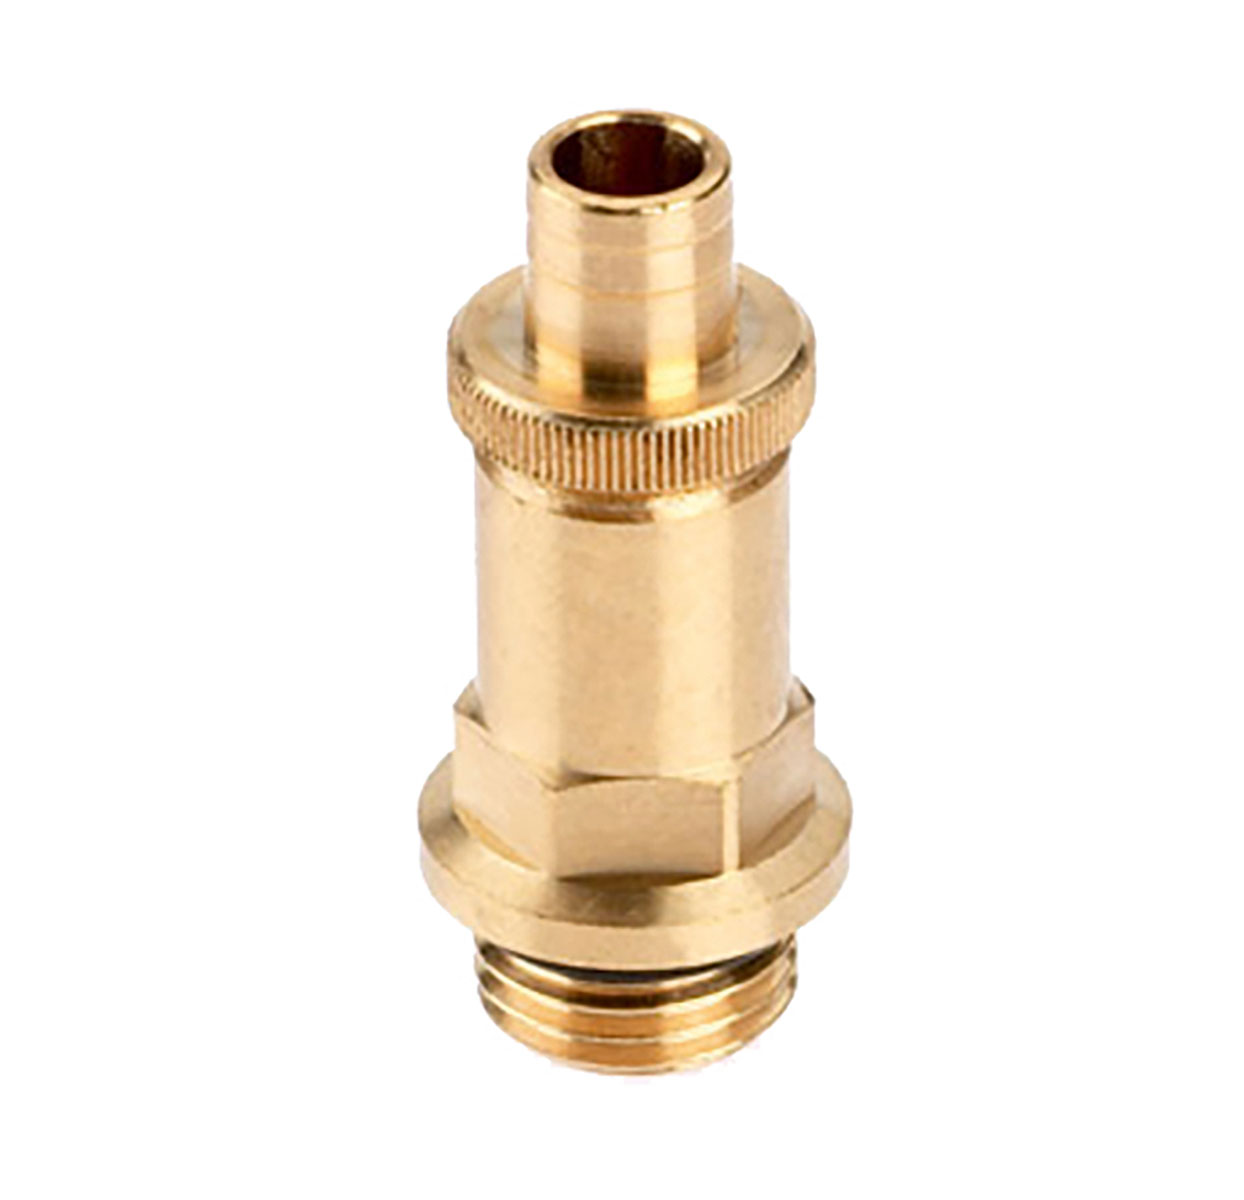 3222080 - Red-brass Drain valve  